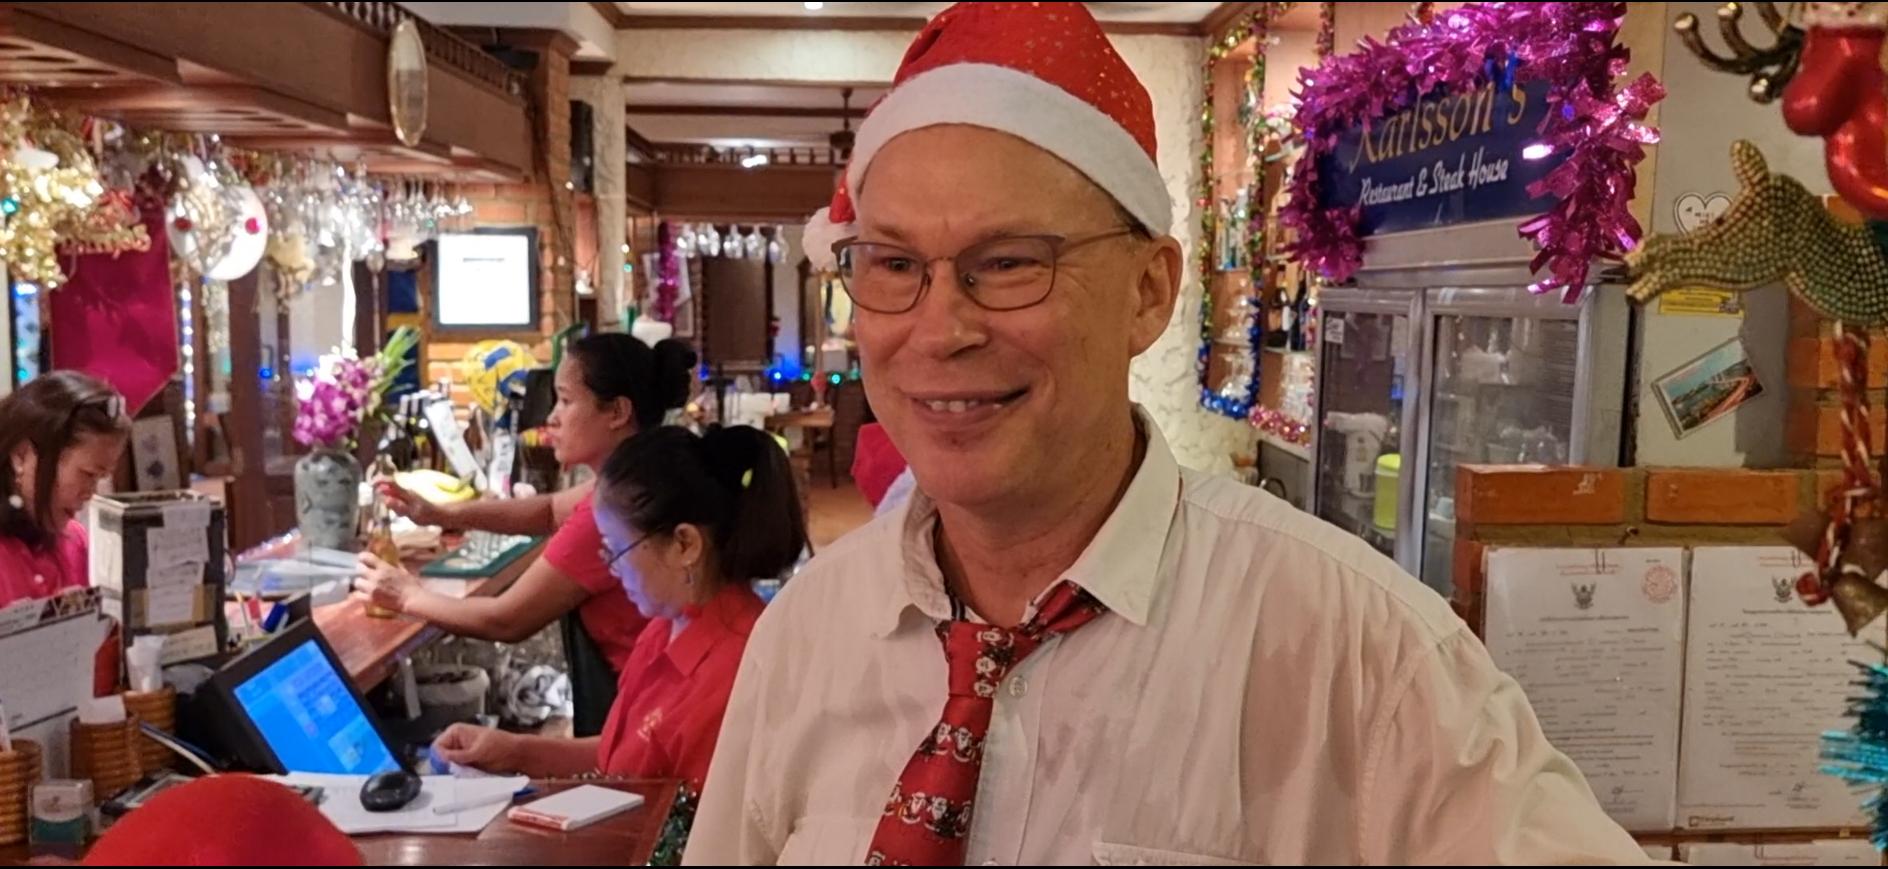 Kent Holmgren, restaurangägare på Karlssons, var glad som ett barn på julafton.